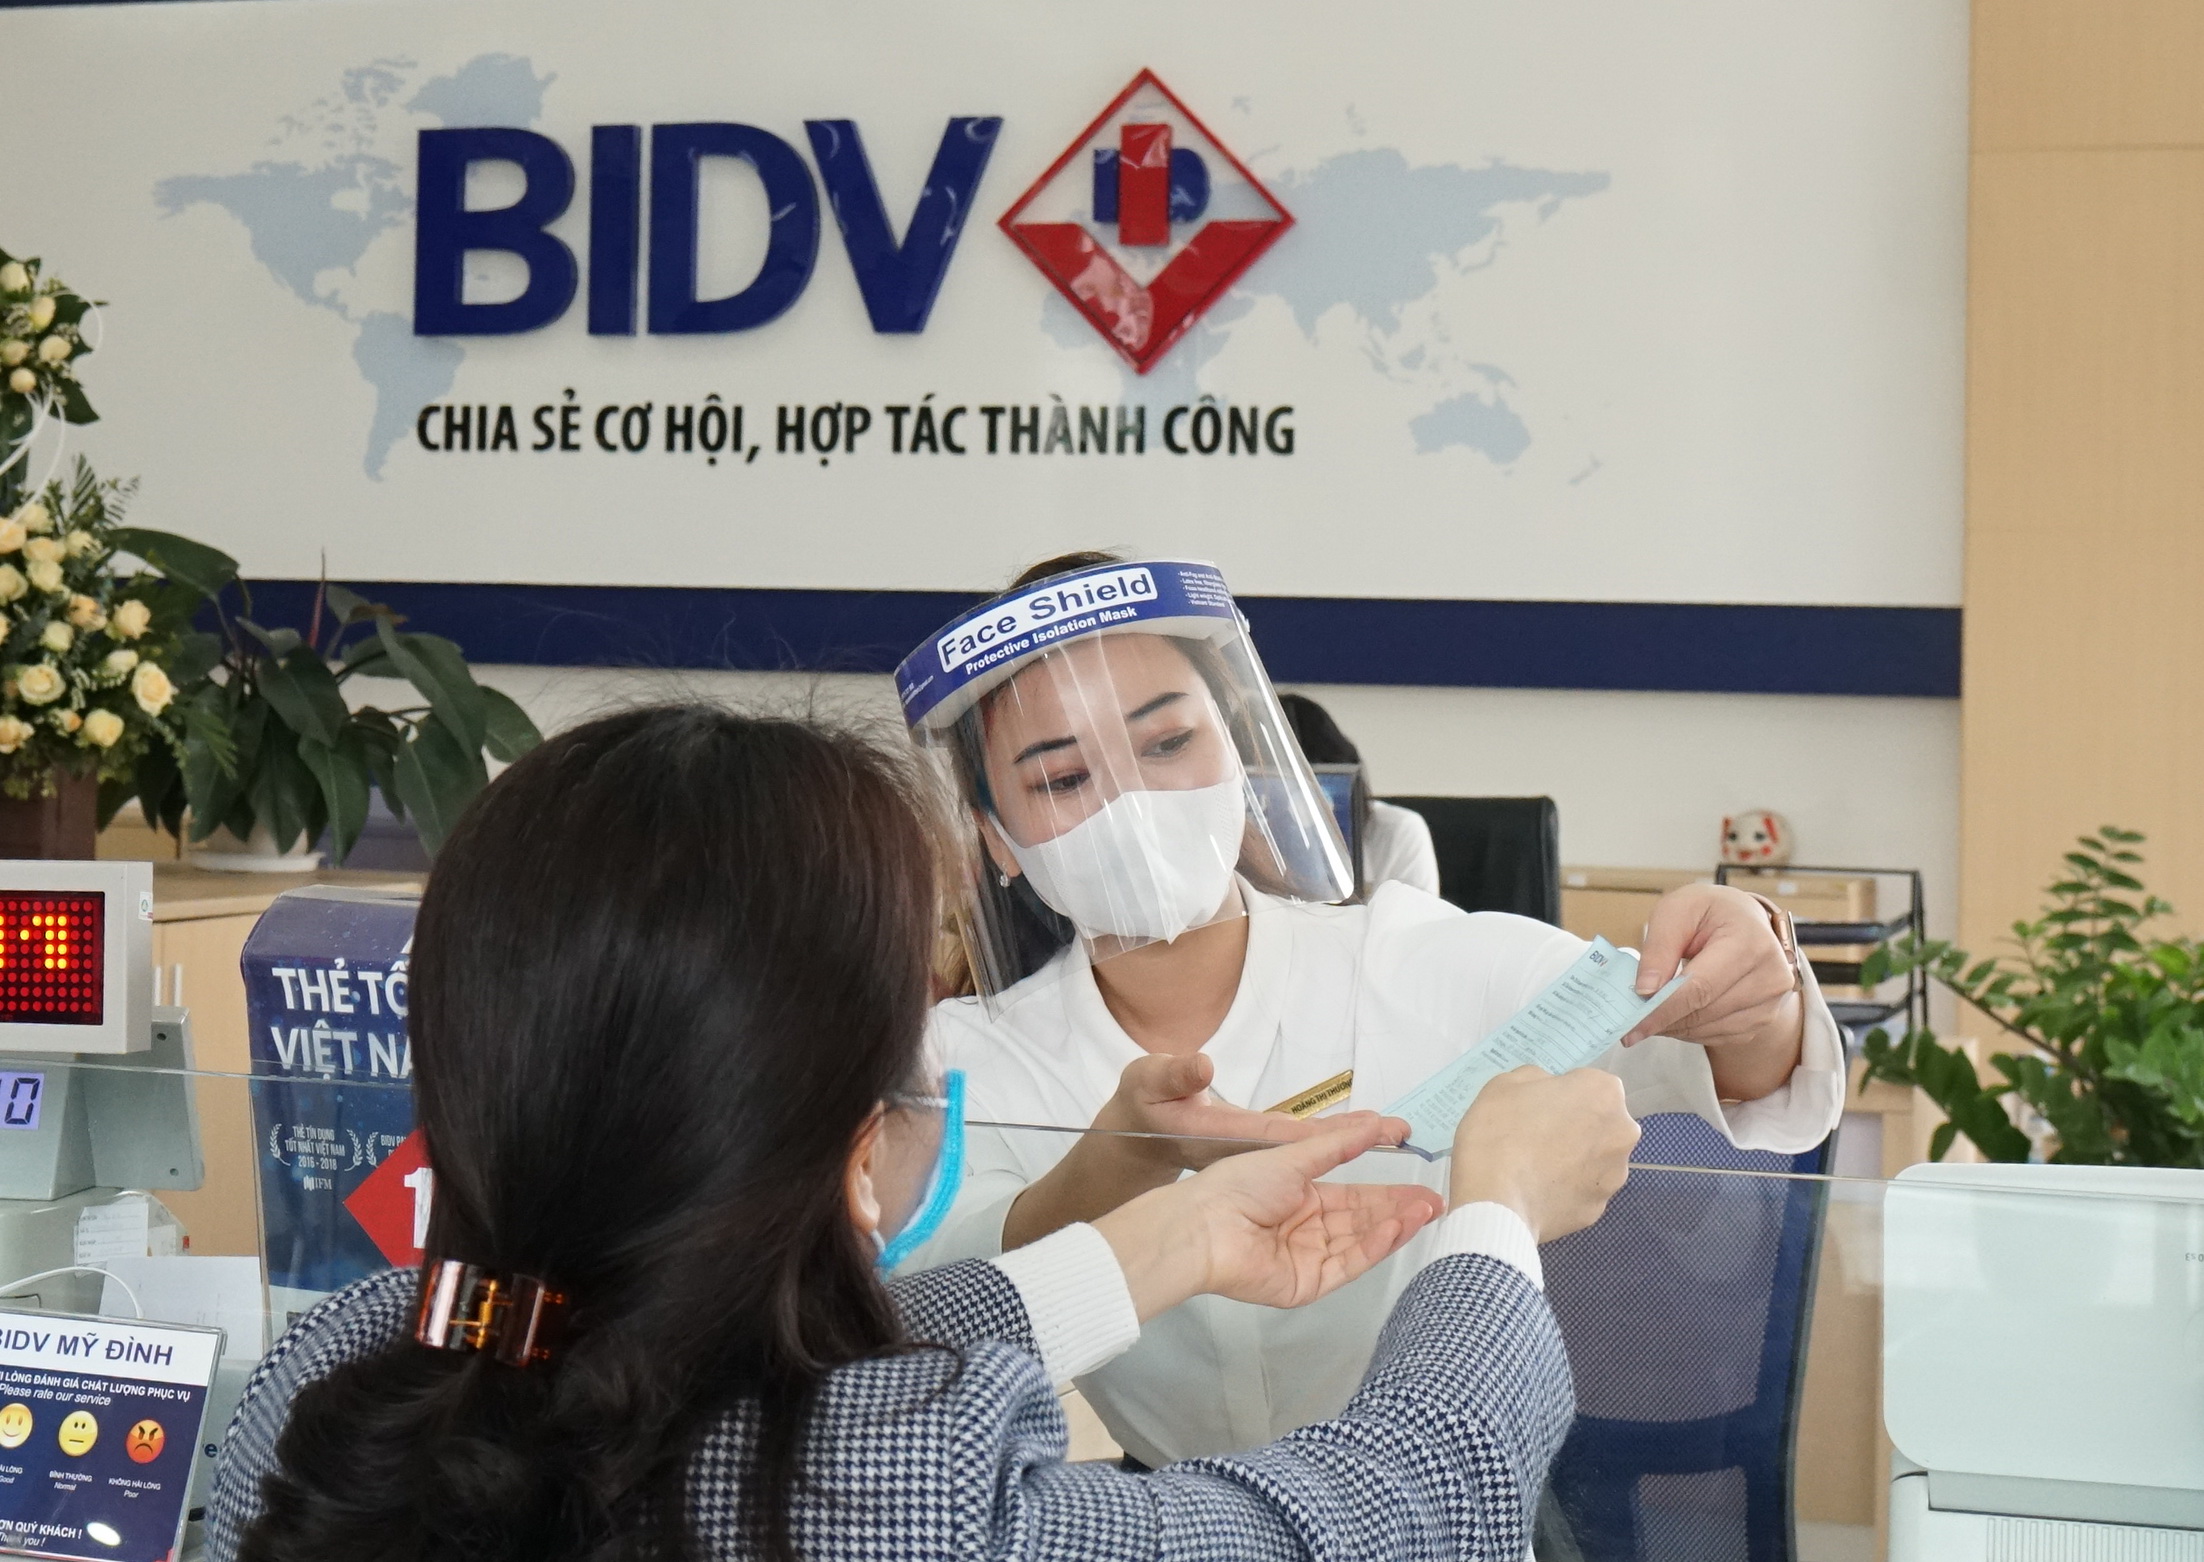 BIDV là một trong 10 ngân hàng cổ phần có tiền gửi khách hàng nhiều nhất